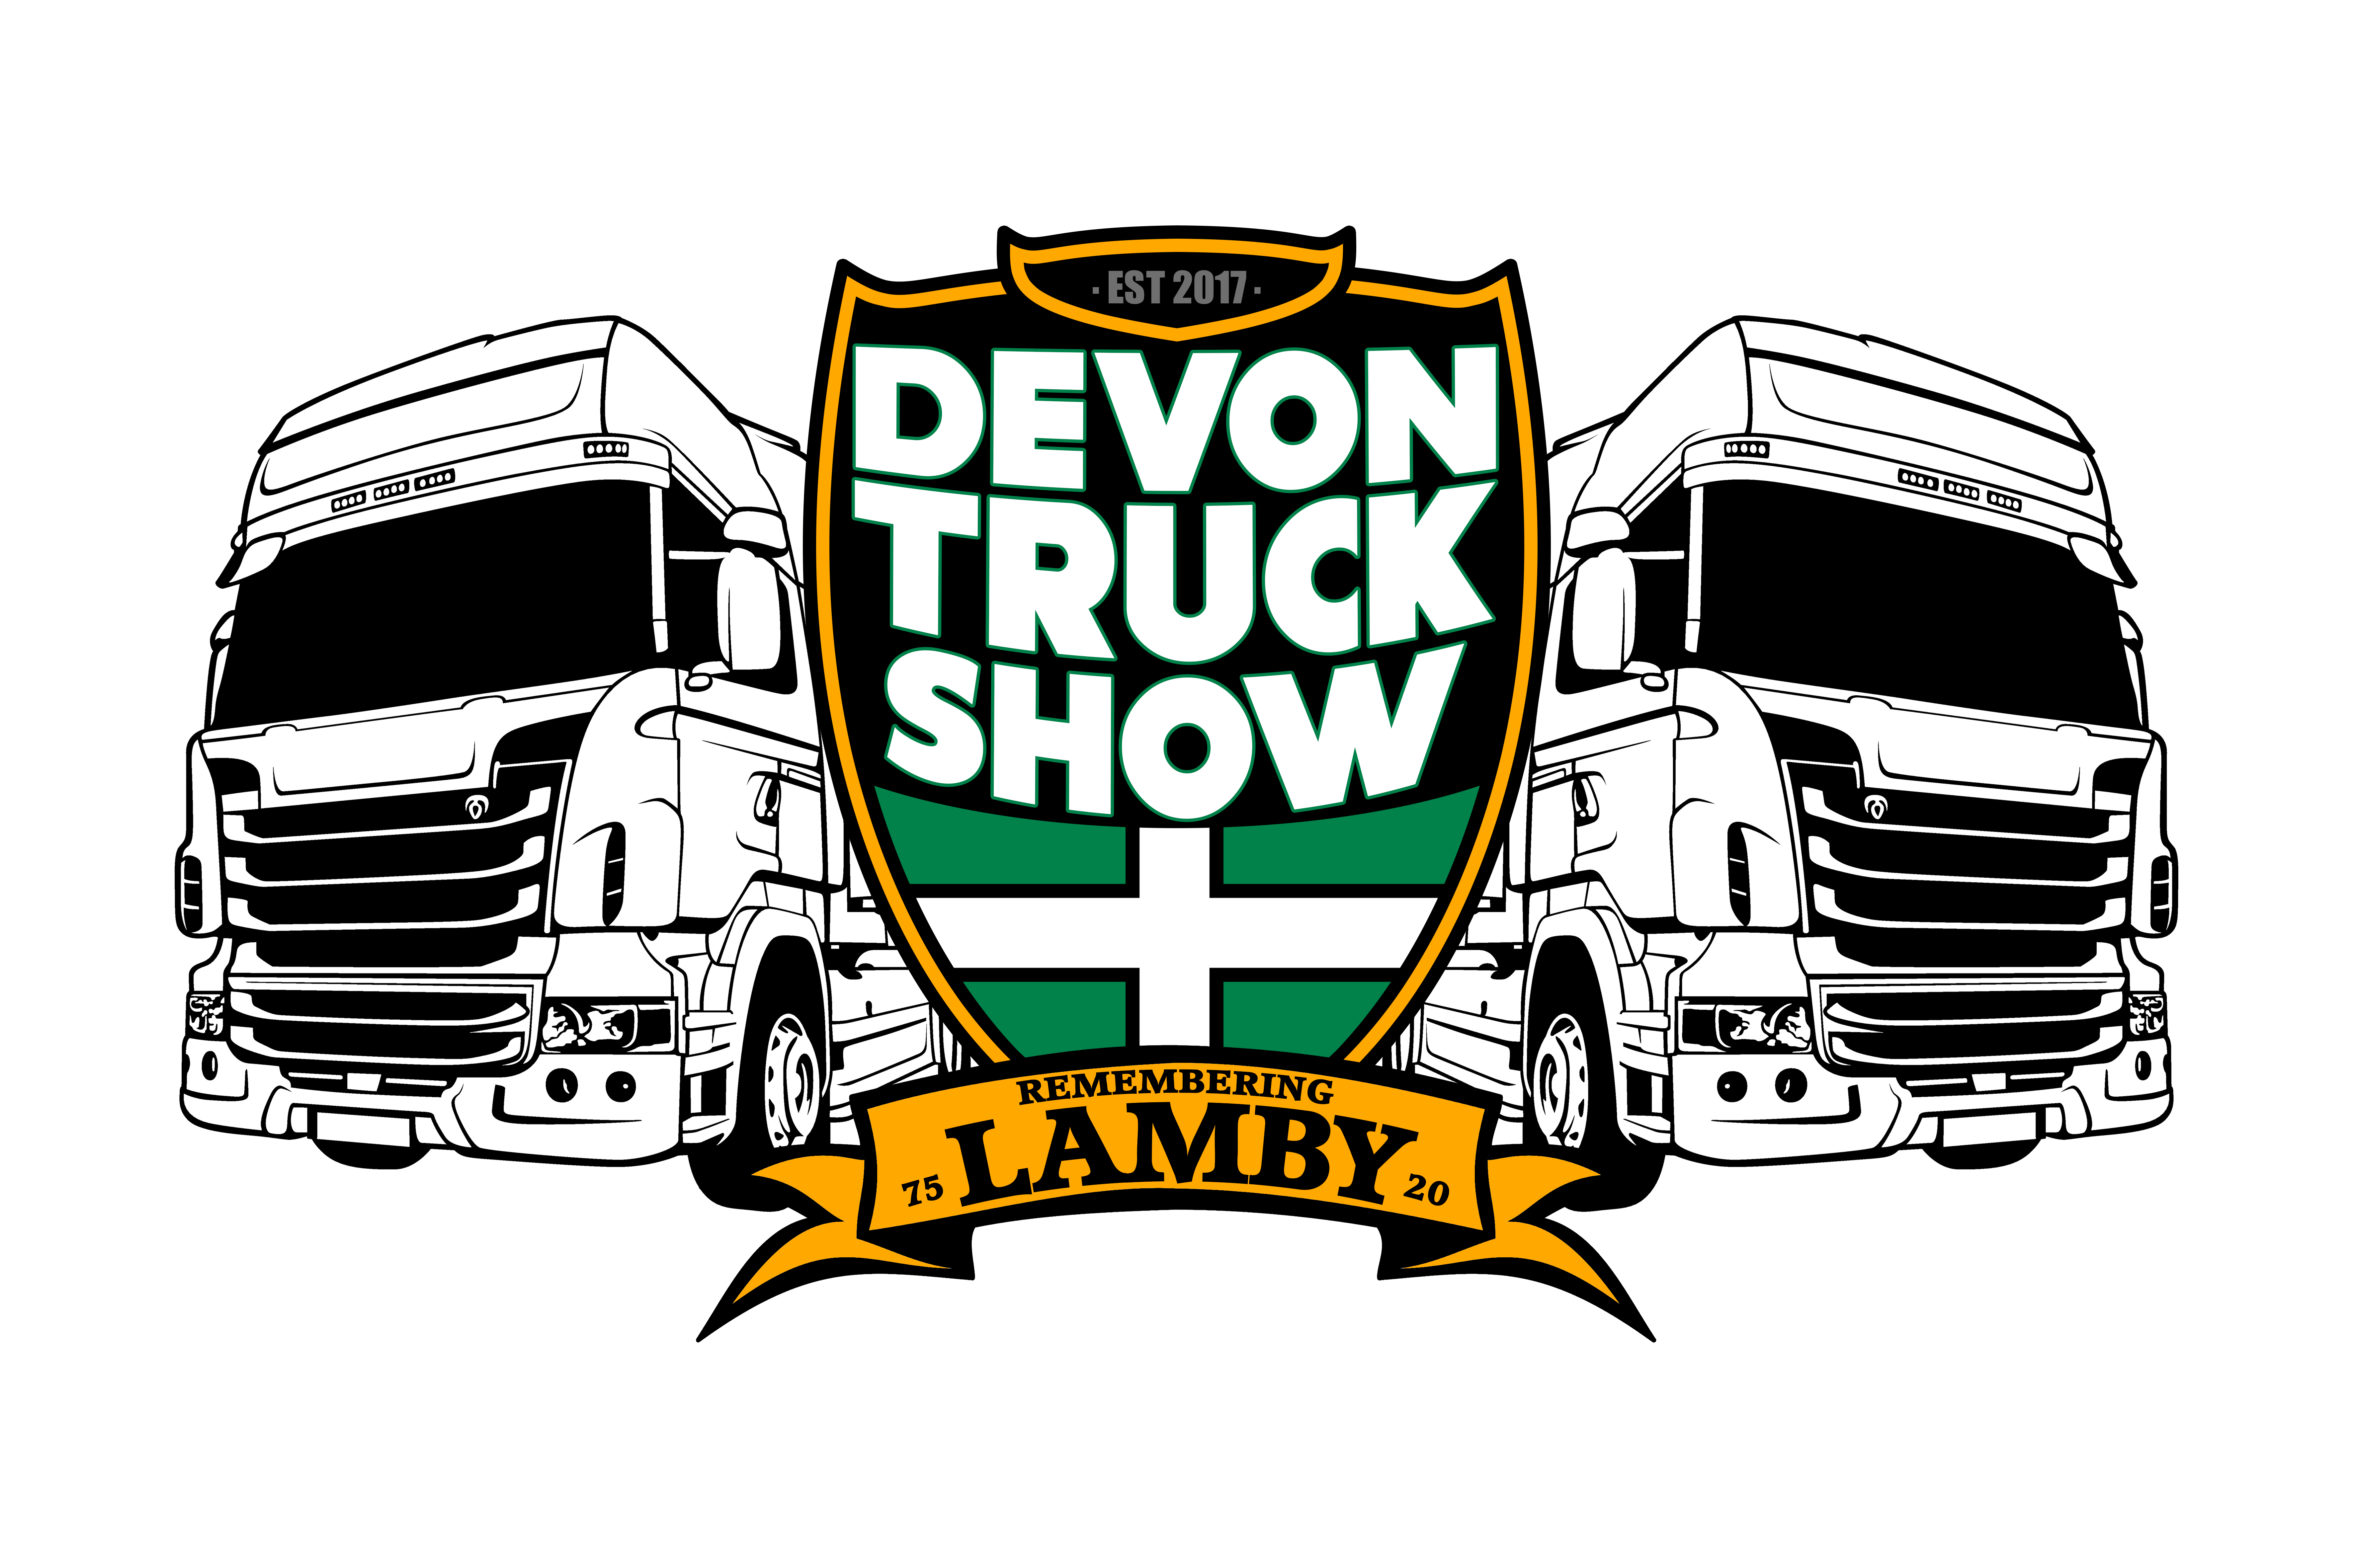 Devon Truck Show #DTS